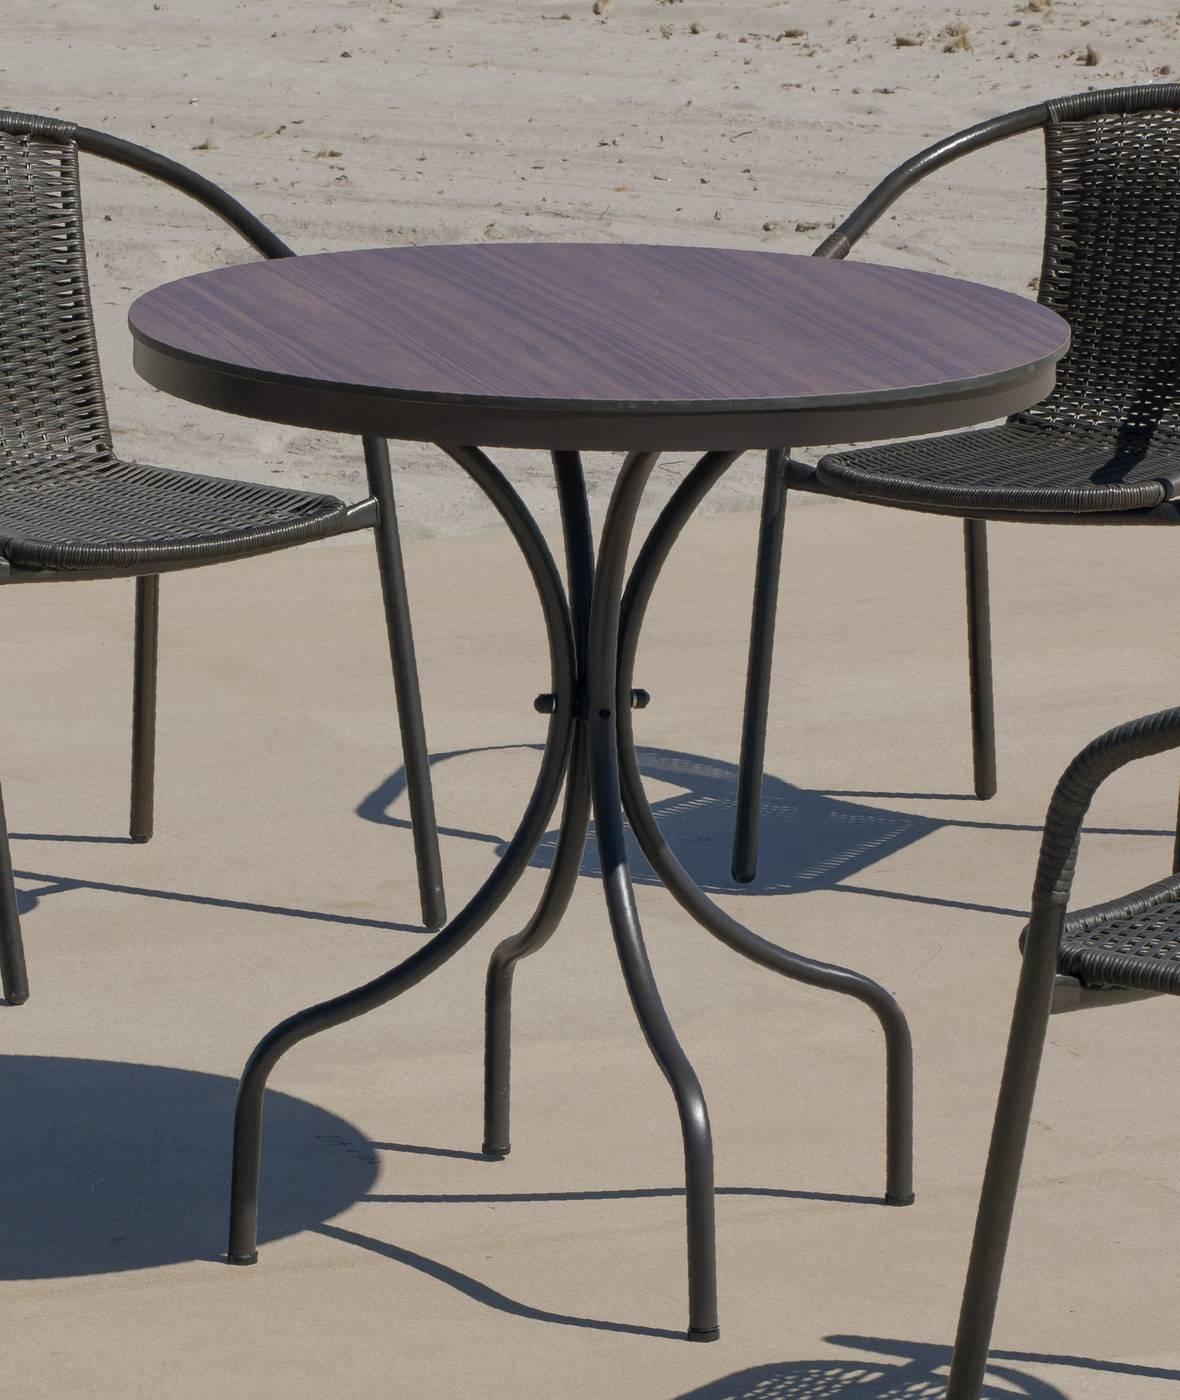 Set Dubay-75-4 Marsel - Conjunto aluminio color marrón: Mesa redonda con tablero HPL de 75 cm + 4 sillones con cojines.